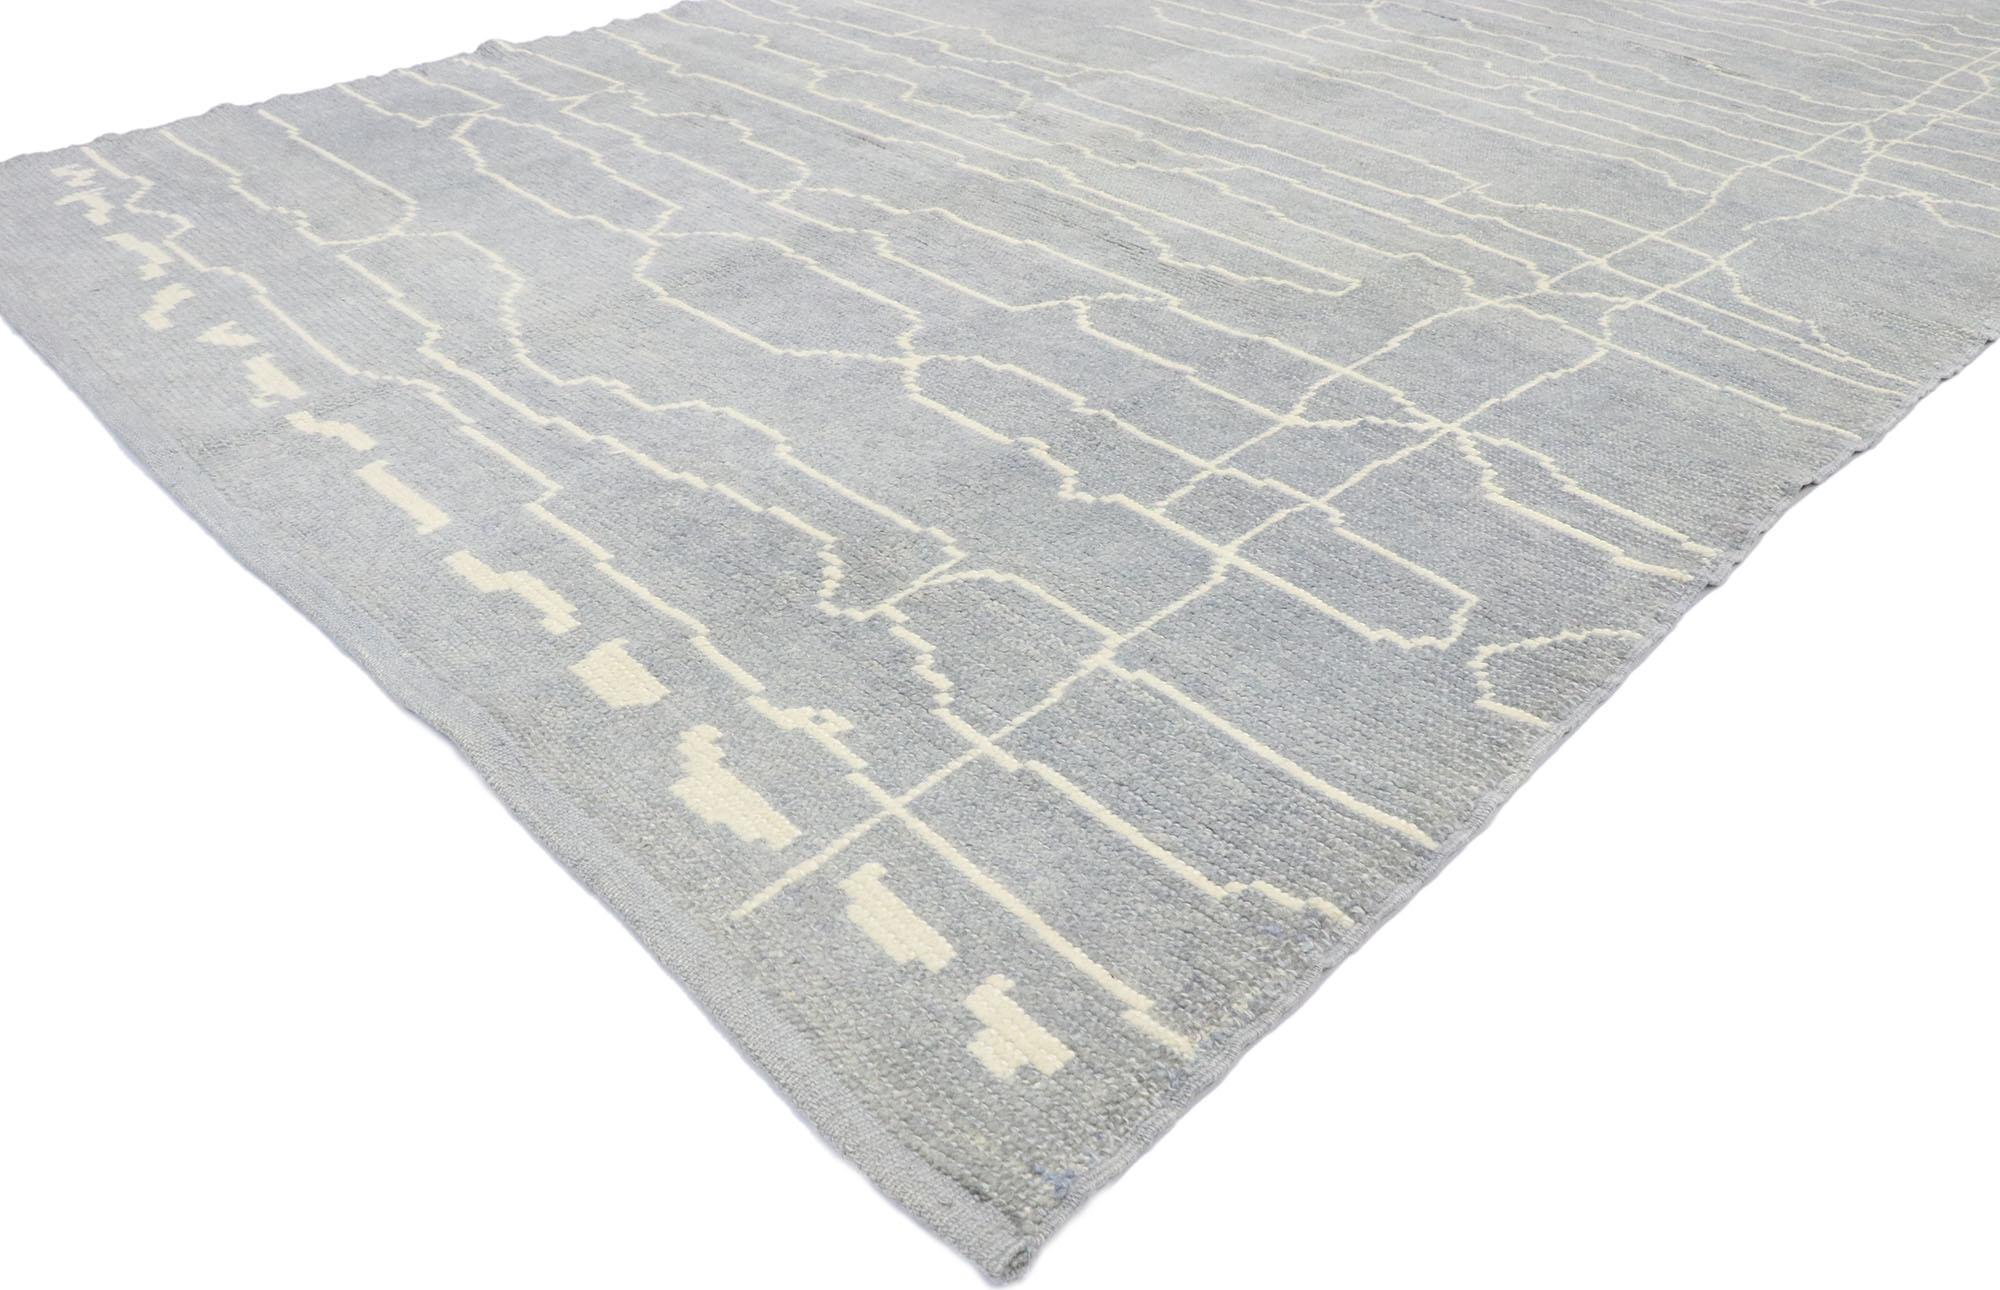 53453, nouveau tapis contemporain gris de style marocain avec design linéaire moderne. Ce tapis marocain contemporain en laine nouée à la main présente une combinaison de gribouillis horizontaux de lignes et d'espaces de manière organique sur un